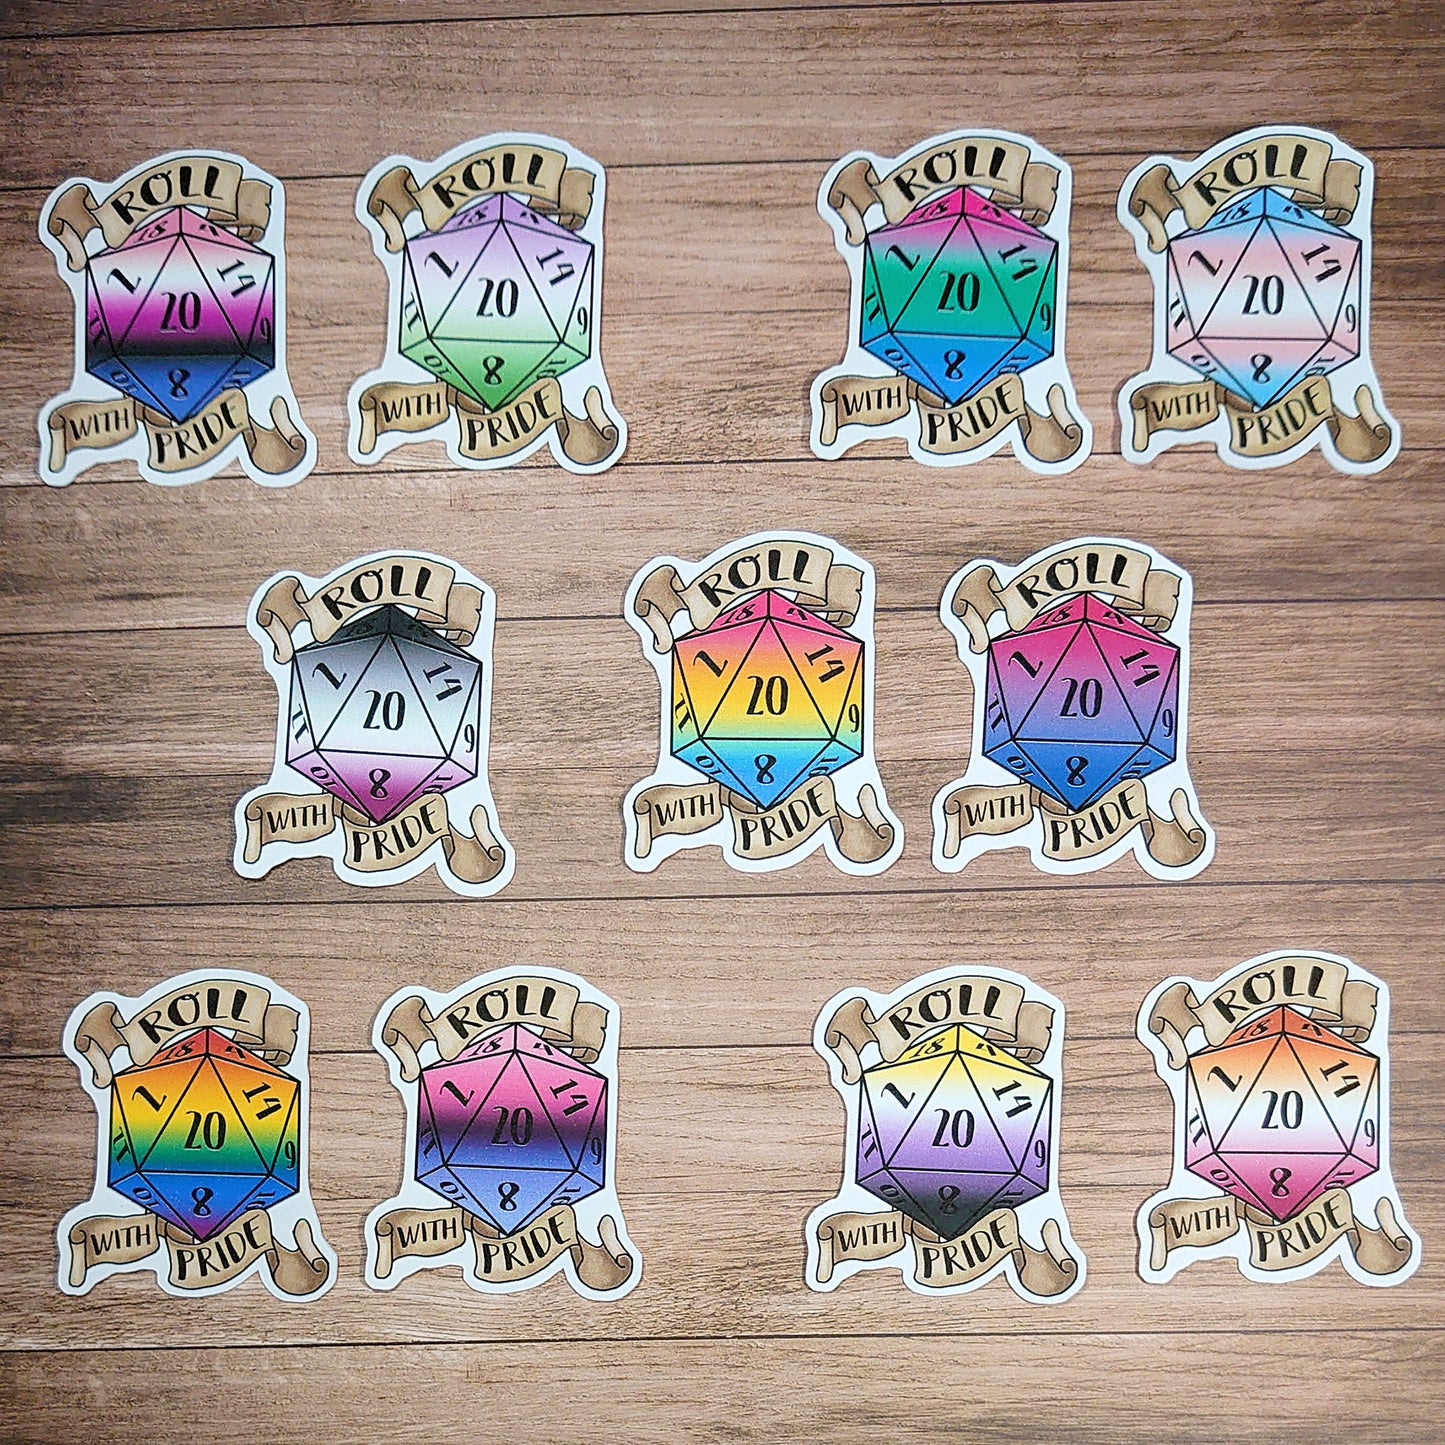 Bisexuell - D20 Pride Sticker - Deko, Rollenspiel, Scrapbooking Vinyl Sticker